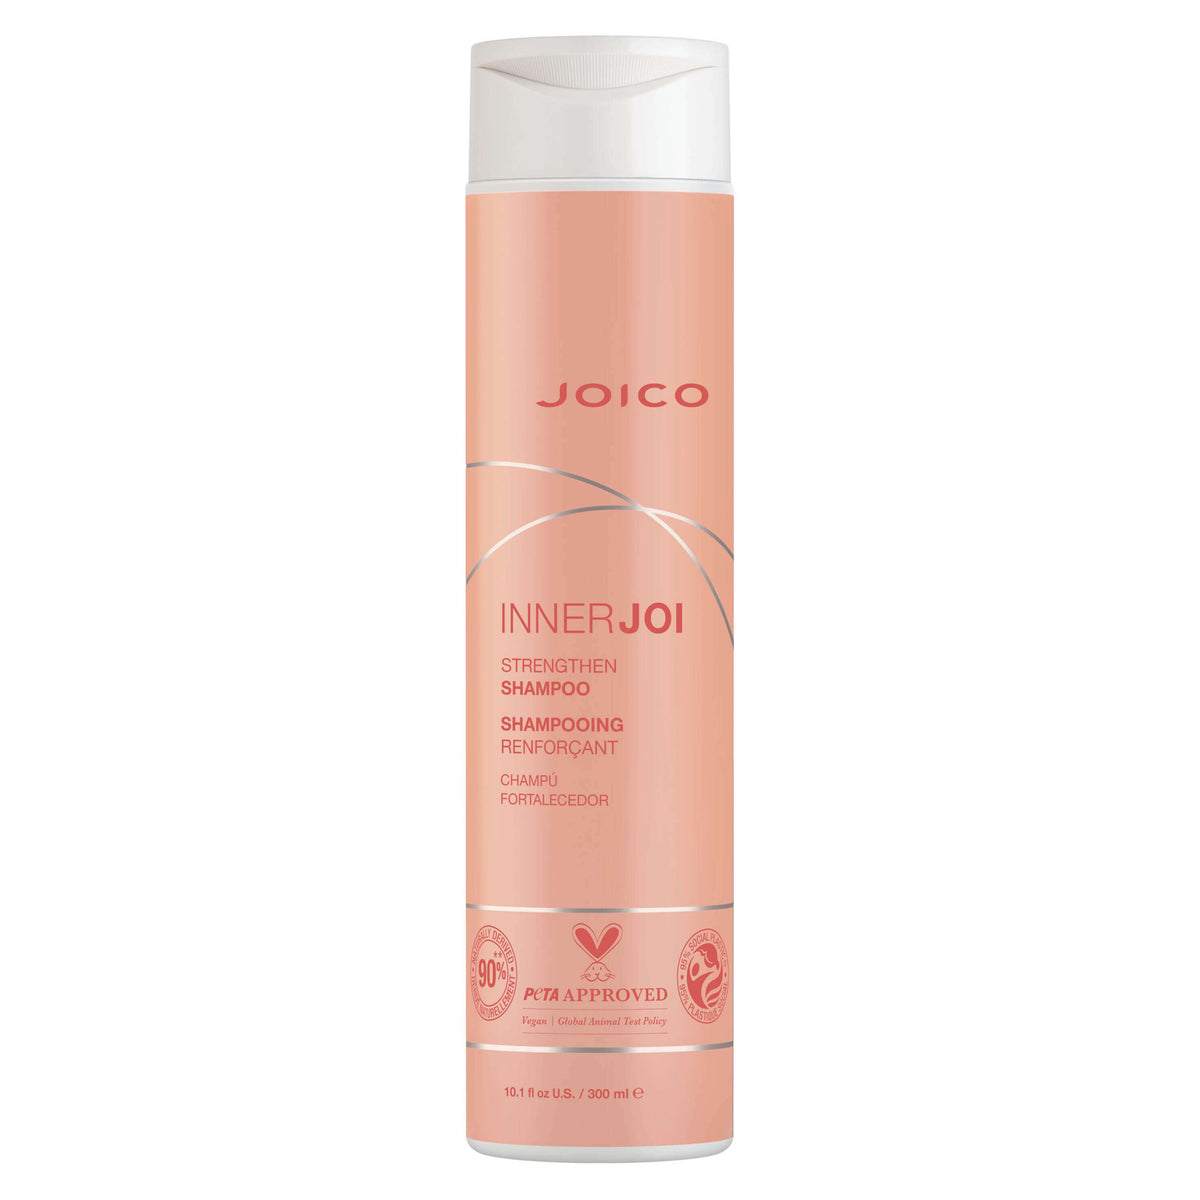 Joico InnerJoi Strengthen Shampoo 300 ml